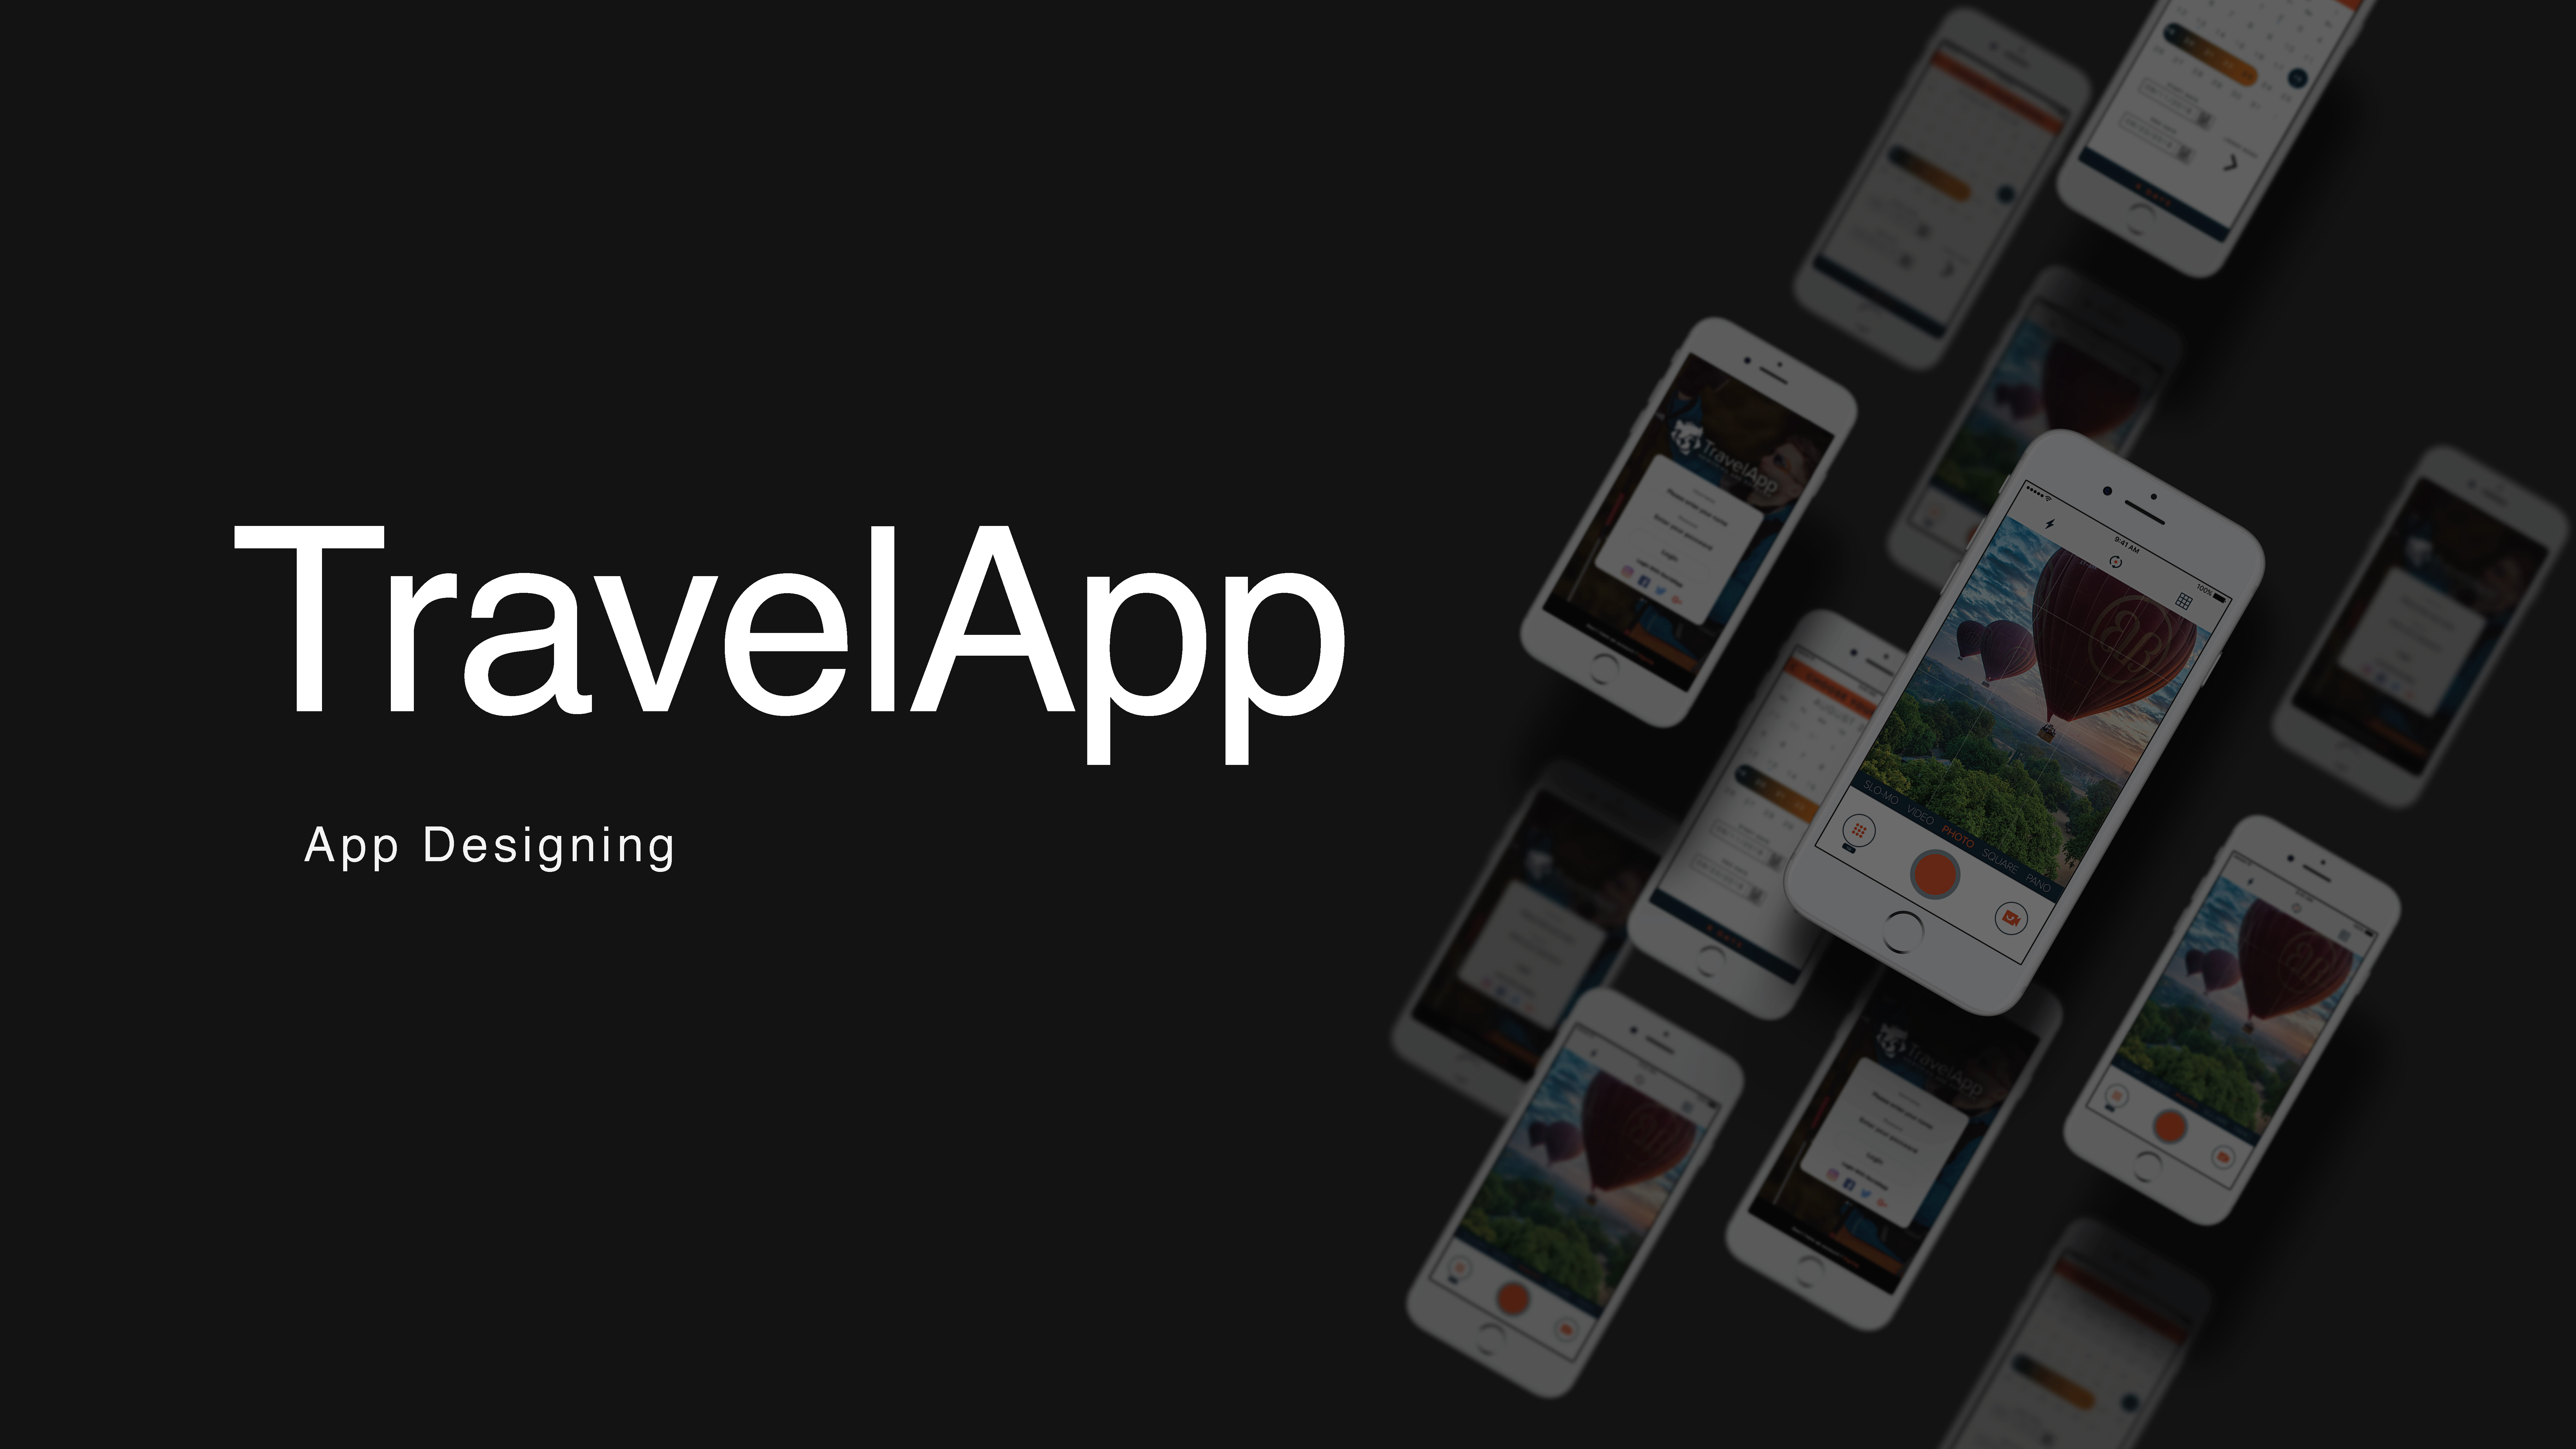 TravelApp- A Case Study: